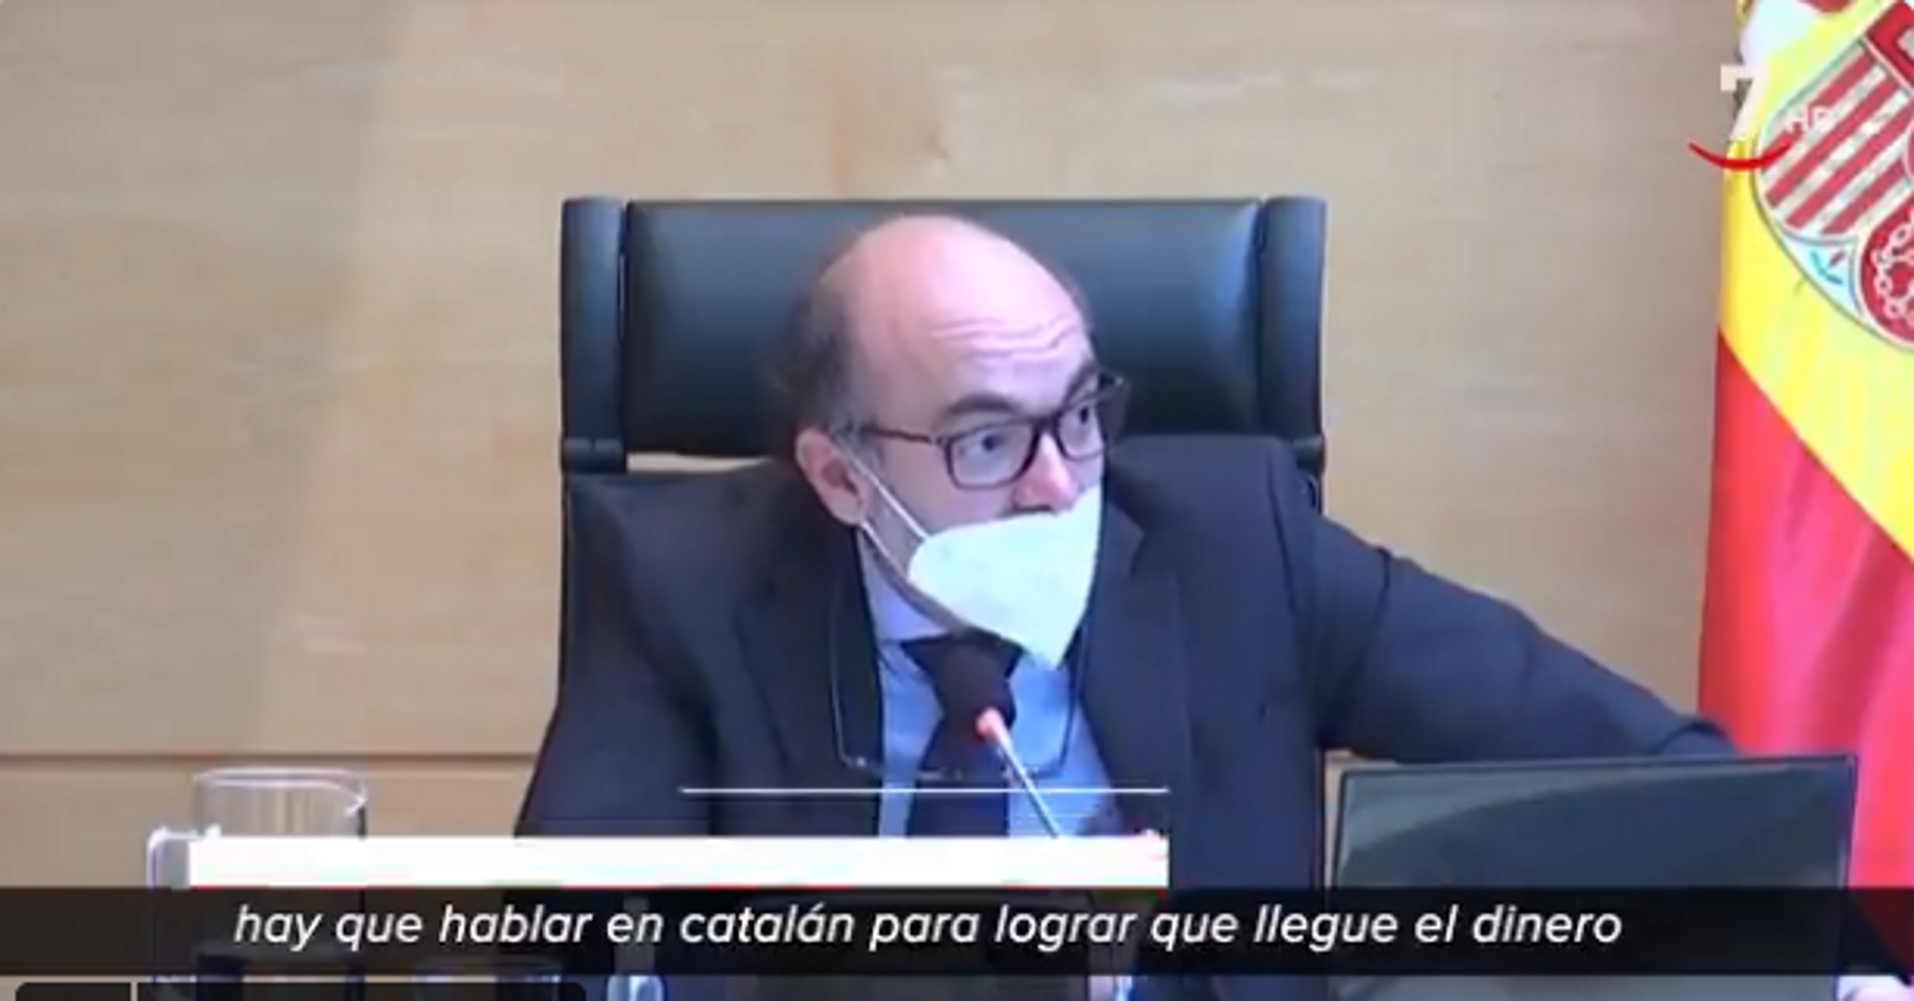 El conseller de Cultura de Castella i Lleó parla català (per reclamar diners)